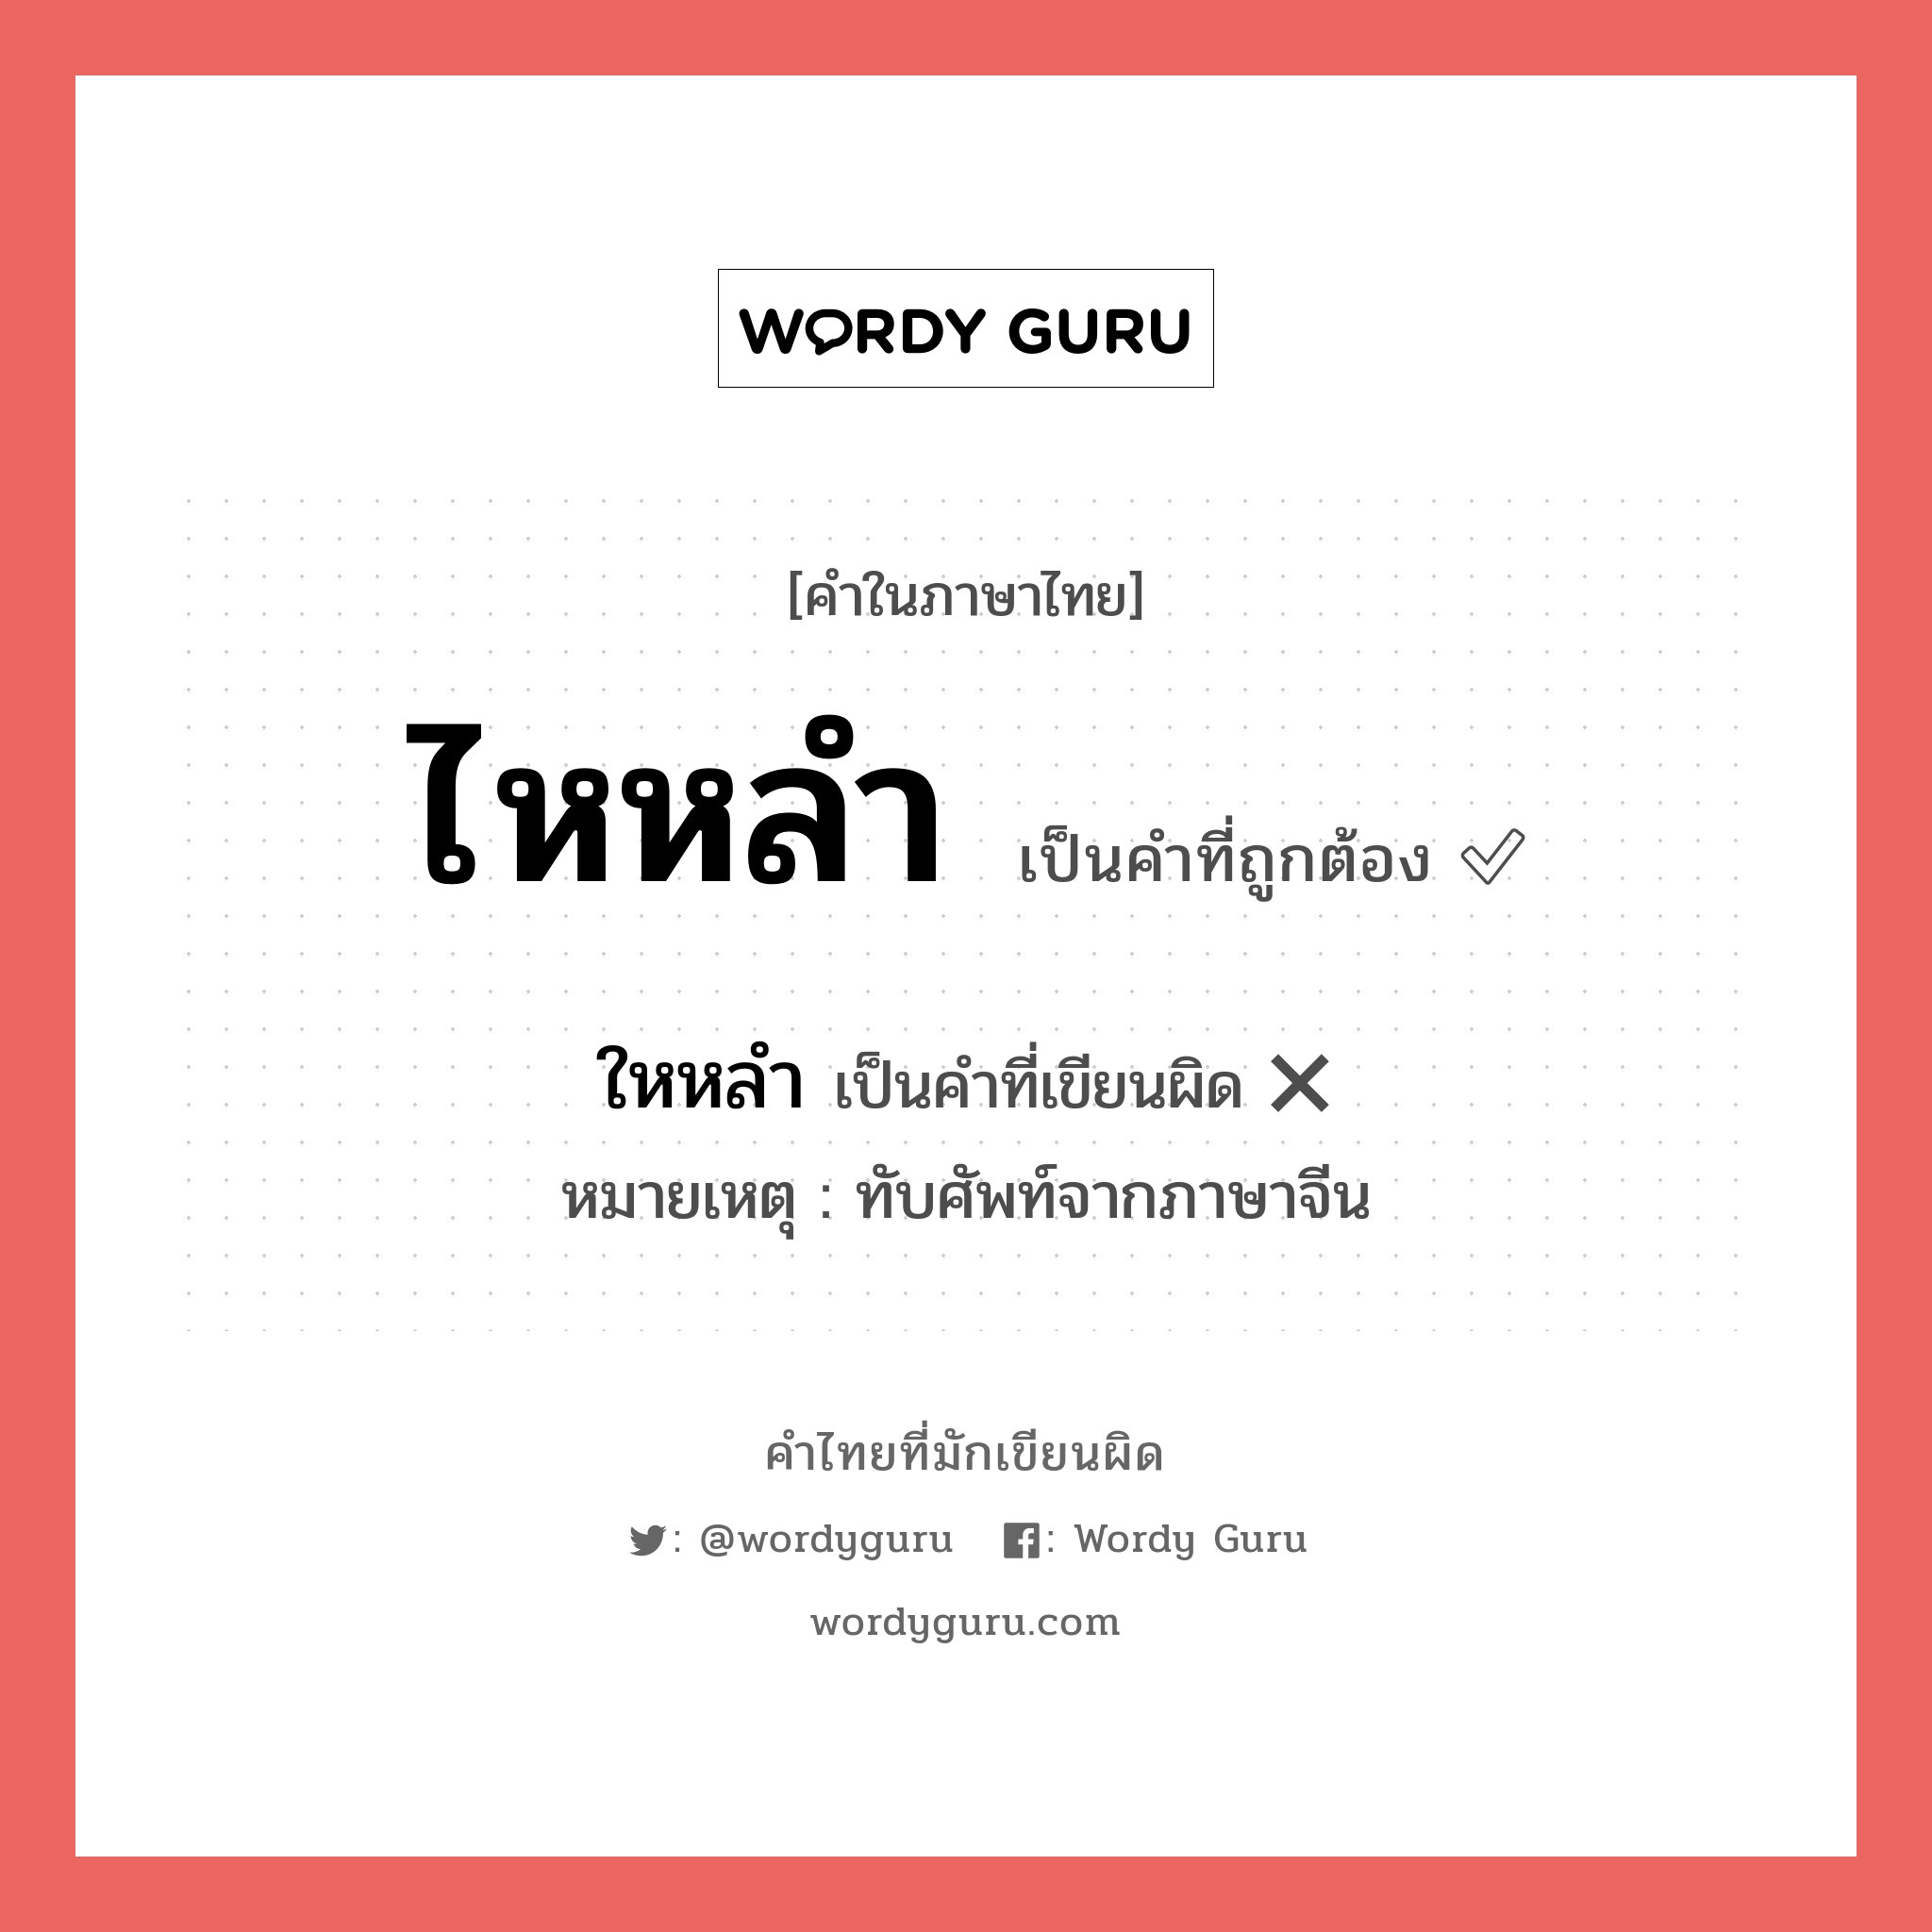 ไหหลำ หรือ ใหหลำ คำไหนเขียนถูก?, คำในภาษาไทยที่มักเขียนผิด ไหหลำ คำที่ผิด ❌ ใหหลำ หมายเหตุ ทับศัพท์จากภาษาจีน